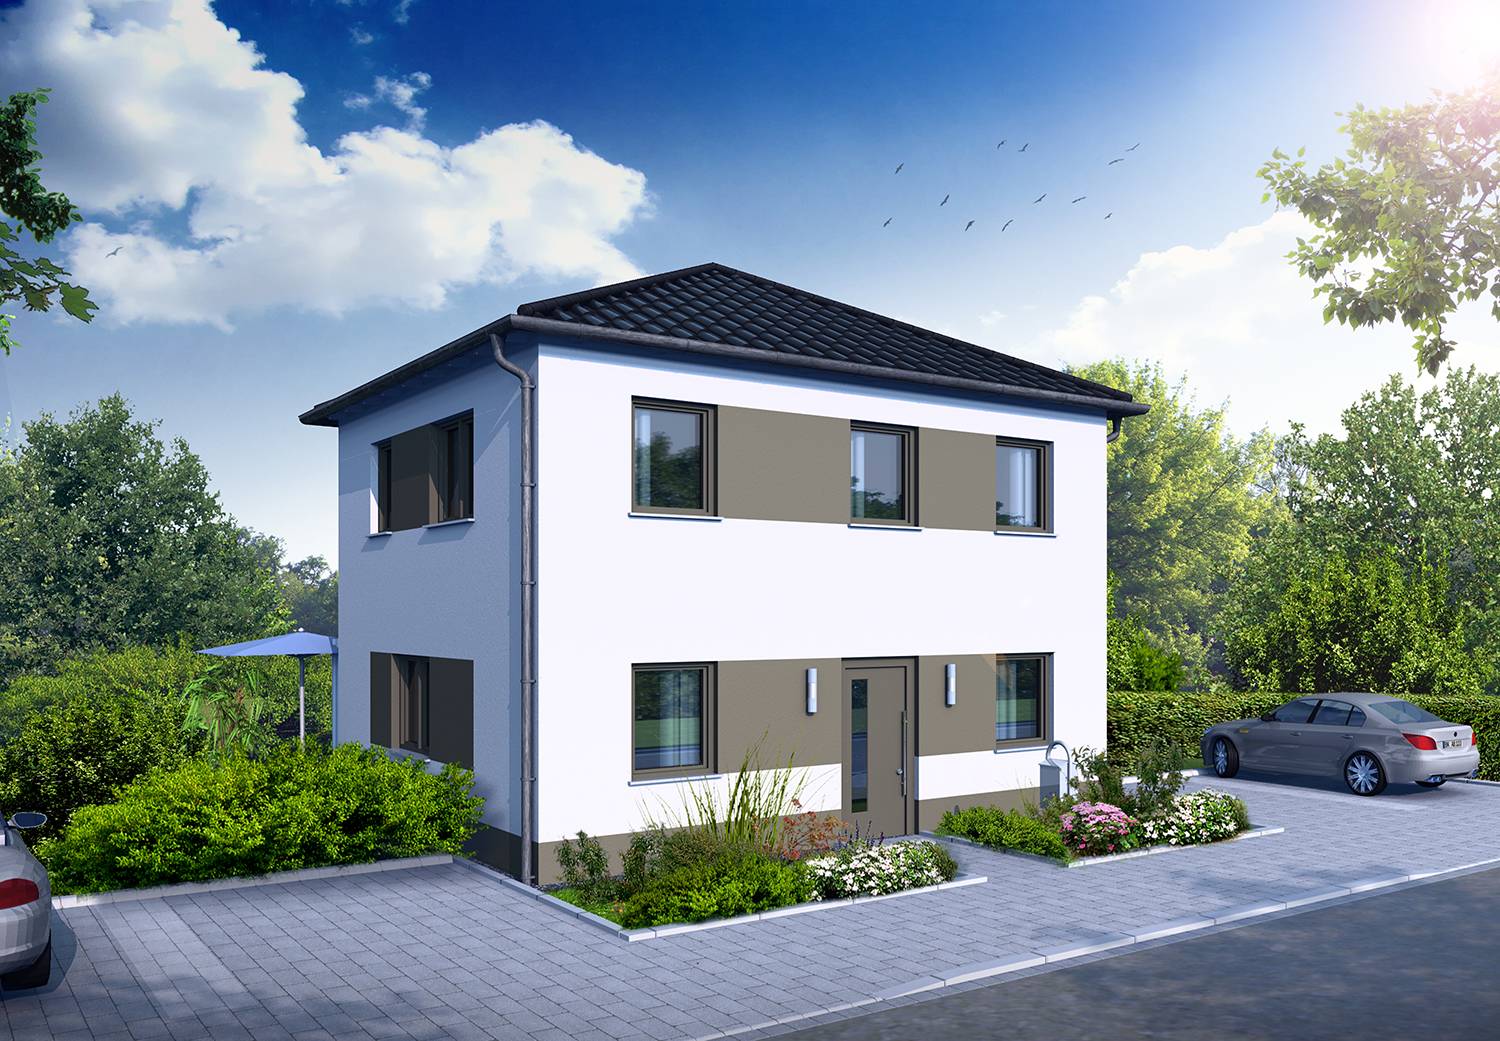 Architekturvisualisierungen Straßen-/Eingangssituation eines Einfamilienhauses mit Zeltdach erstellt für die Firma MOSELBAU - SCHLÜSSELFERTIGES BAUEN - GMBH im Jahre 2023.